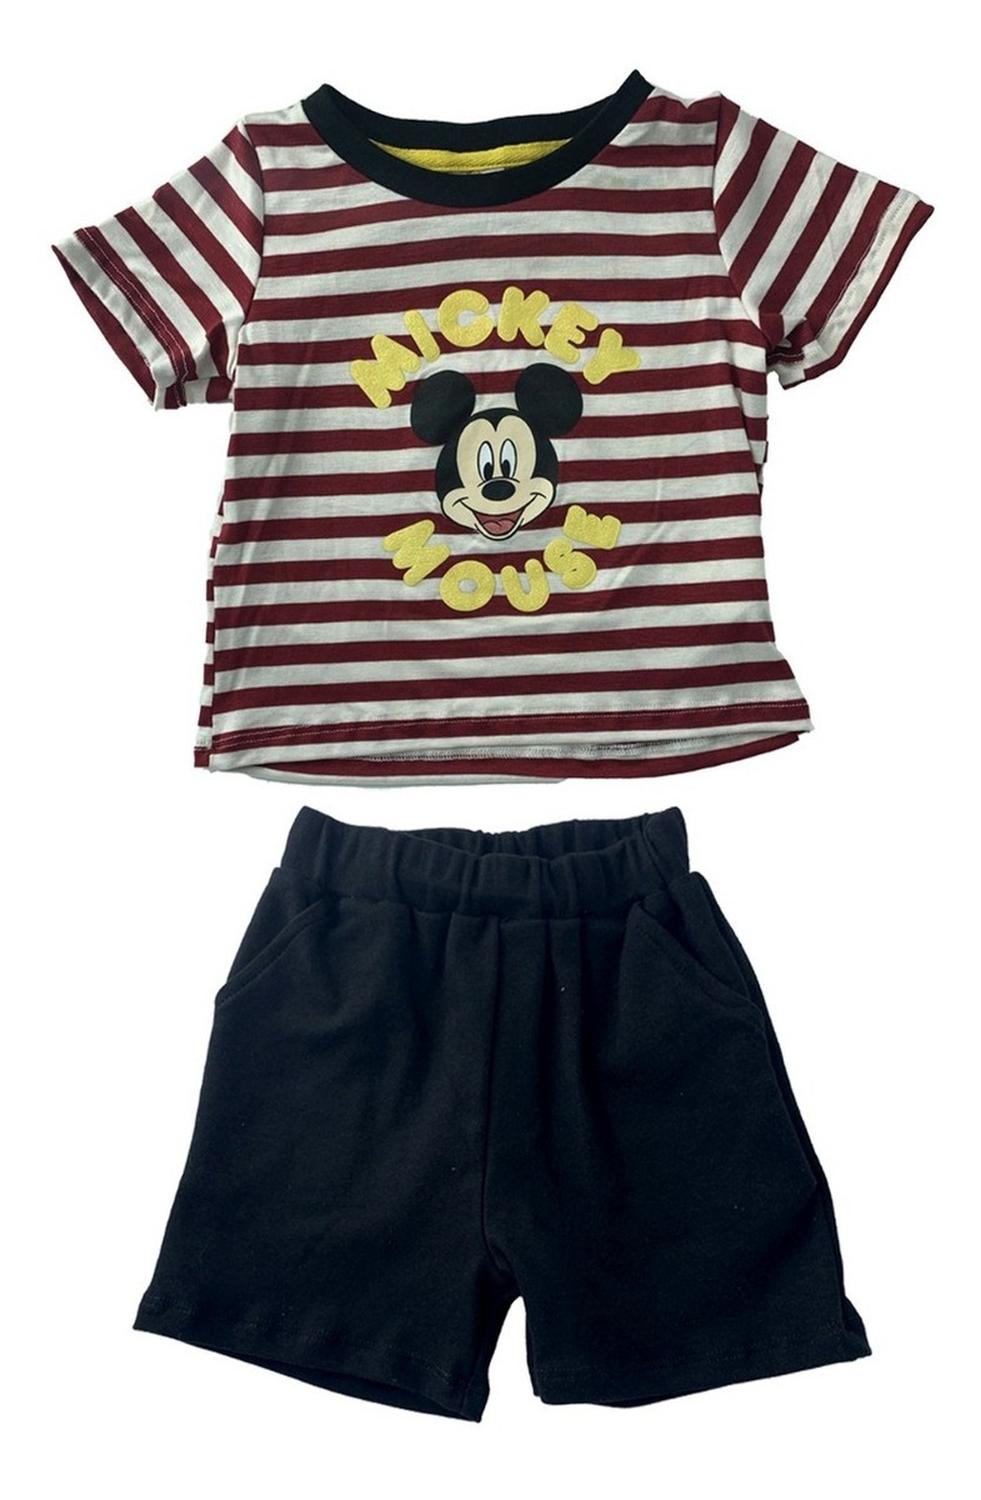 Kit 3 Conjuntos Disney para Niño Mickey Mouse (ONE TEAM)